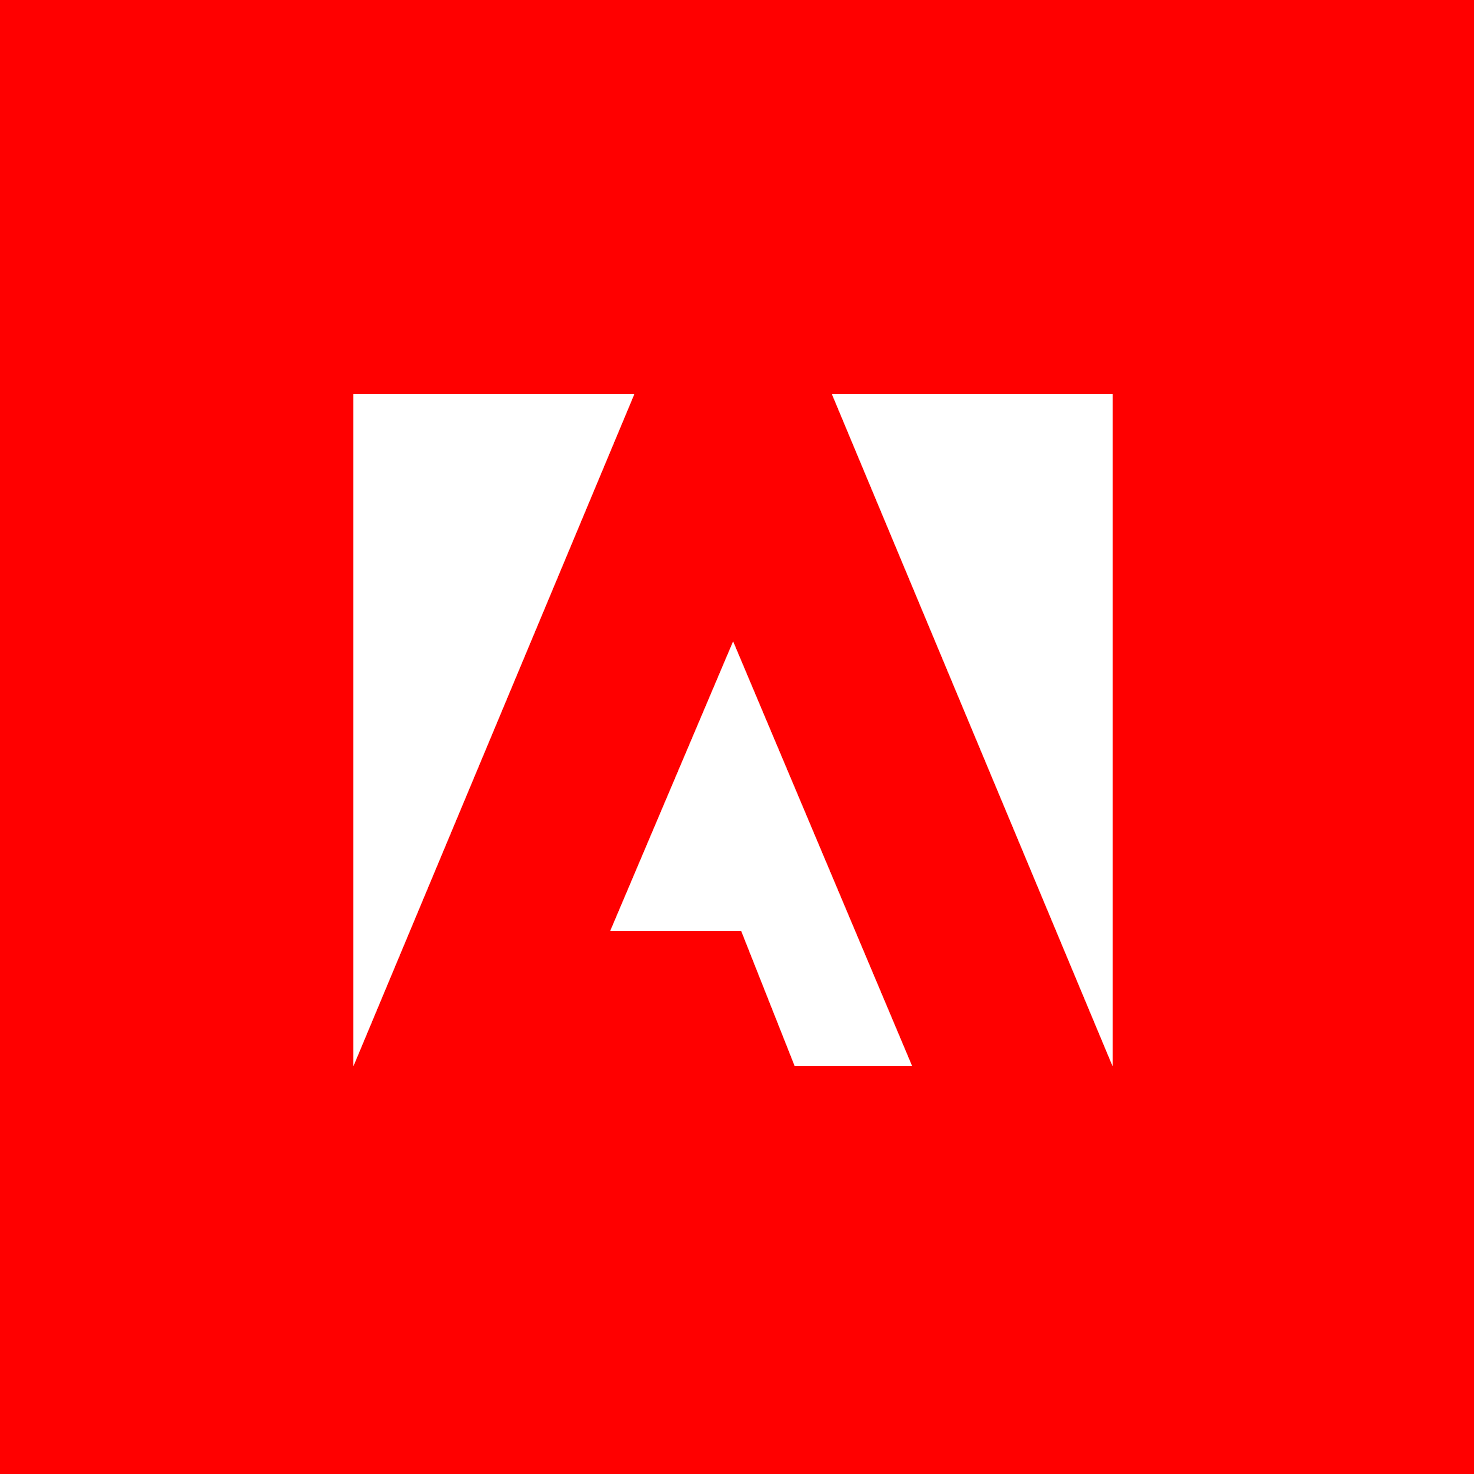 Adobe Marketo Engage - Marketing Automation Software